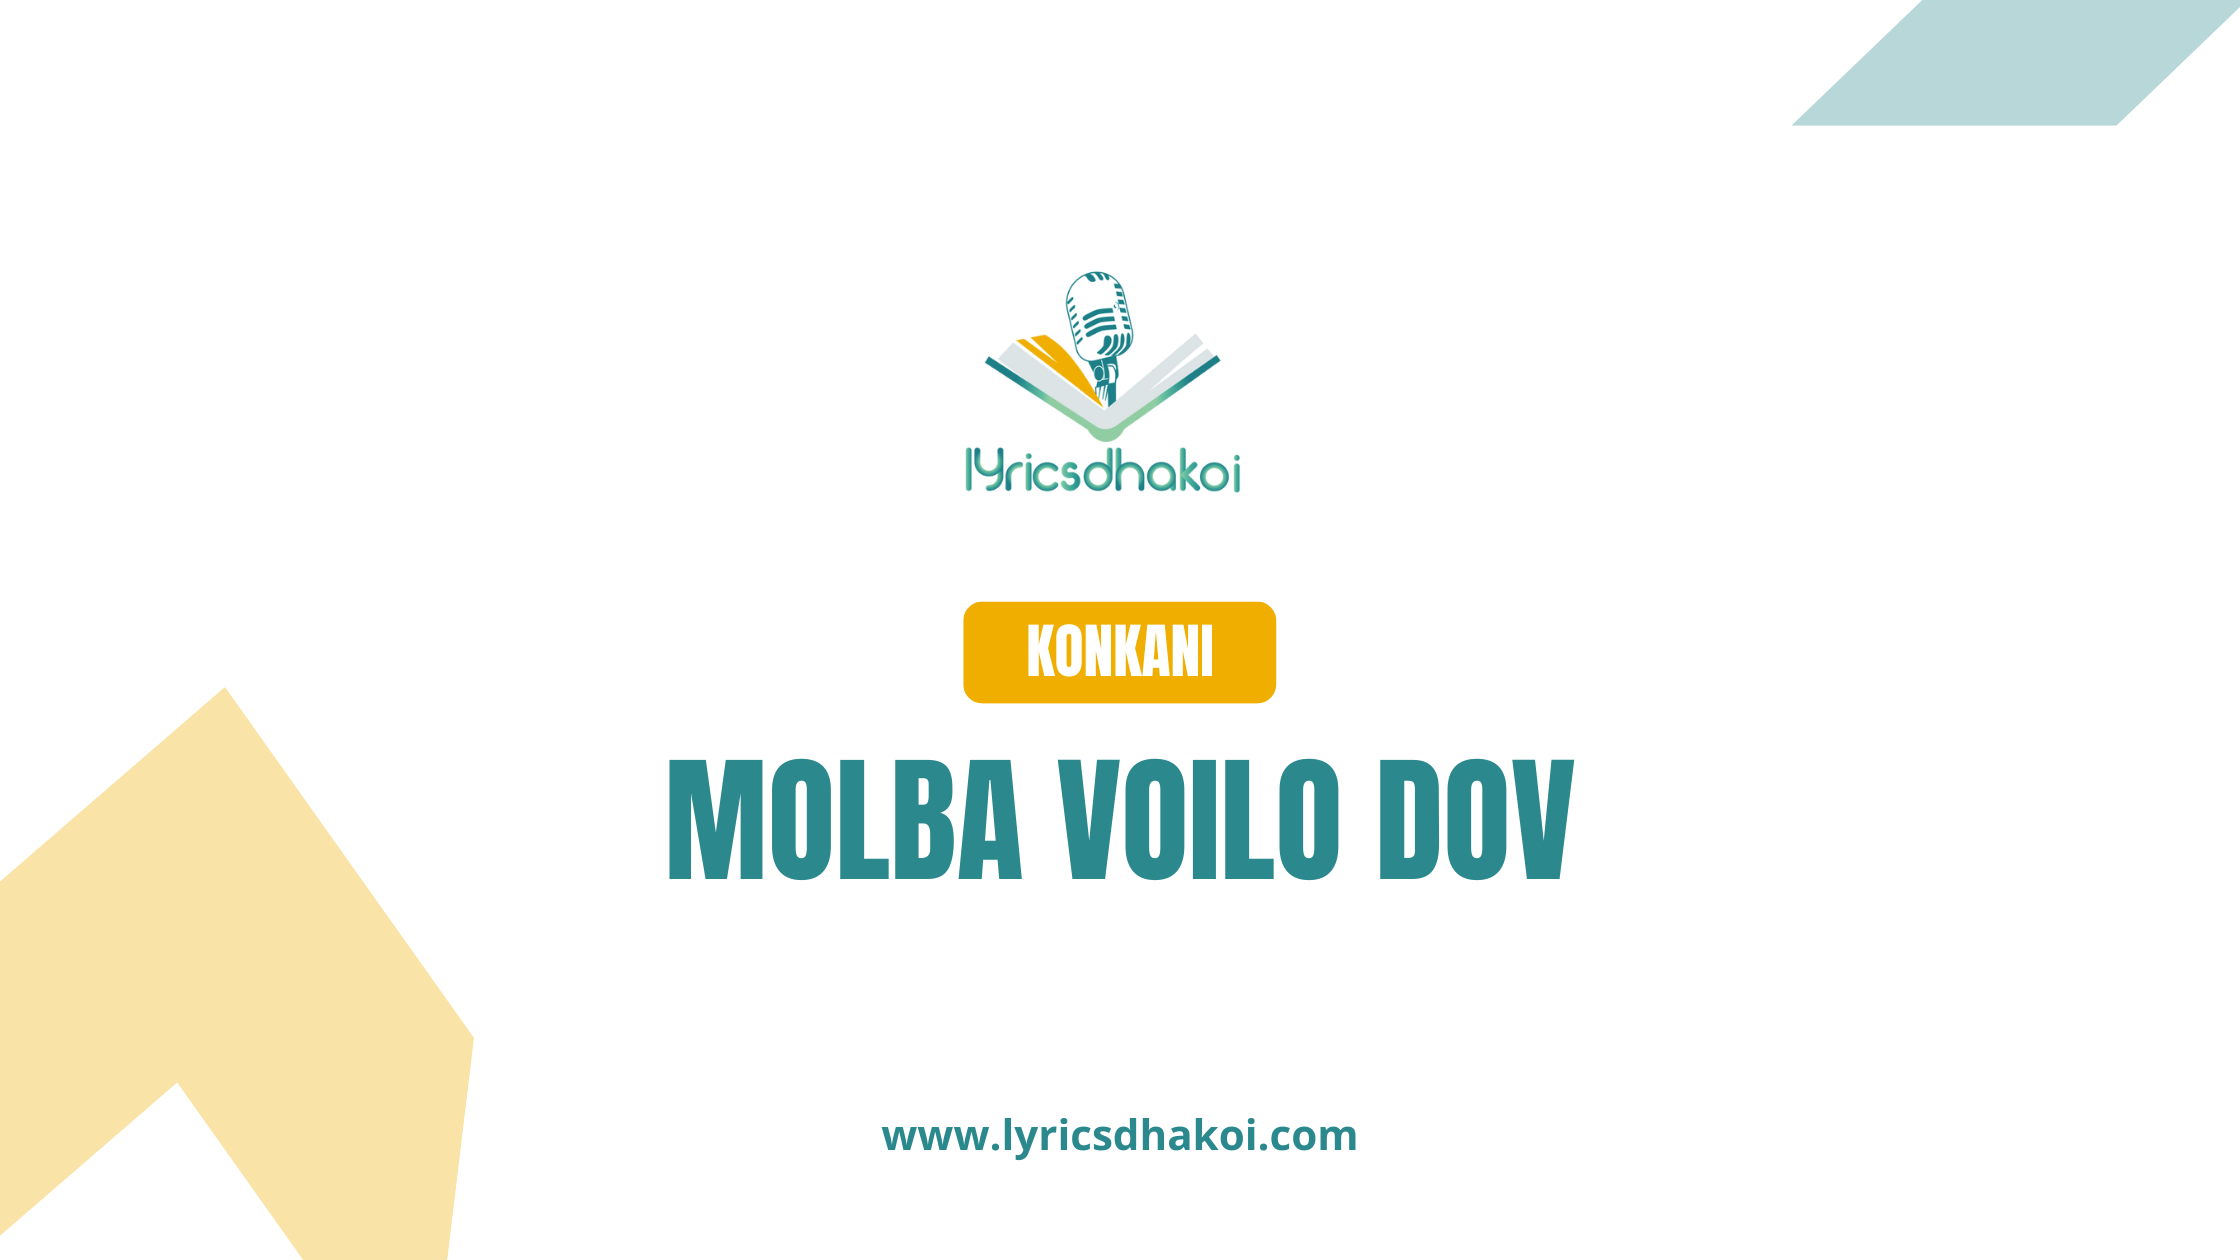 Molba Voilo Dov Konkani Lyrics for Karaoke Online - LyricsDhakoi.com